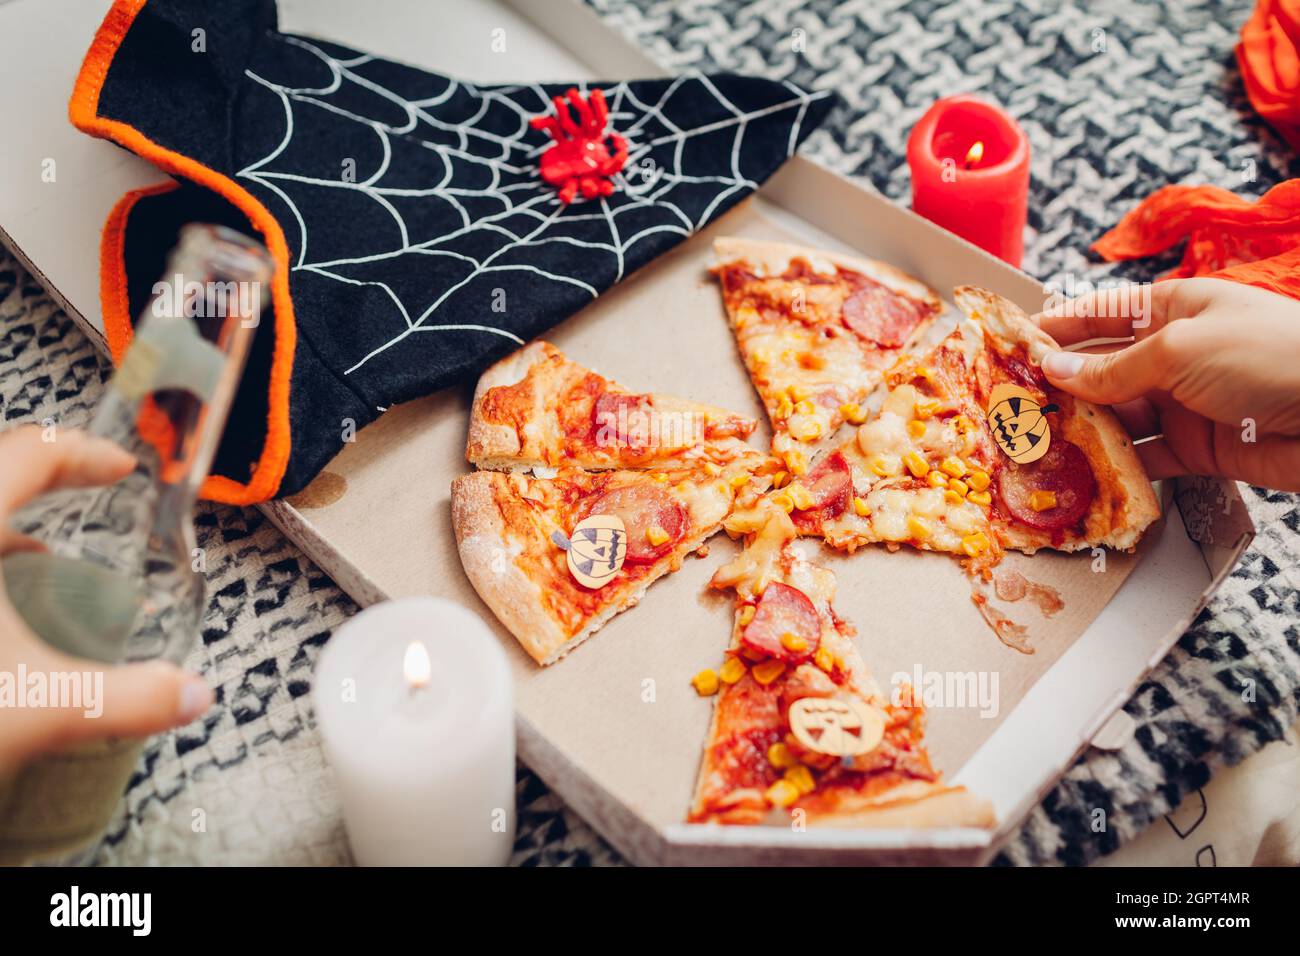 Helloween Pizza mit kleinen Papierkarren-O-Laternen-Kürbissen.  Feiertagsfeier mit Kerzen und Kostümen. Halloween Essen mit Getränk in der  Flasche Stockfotografie - Alamy